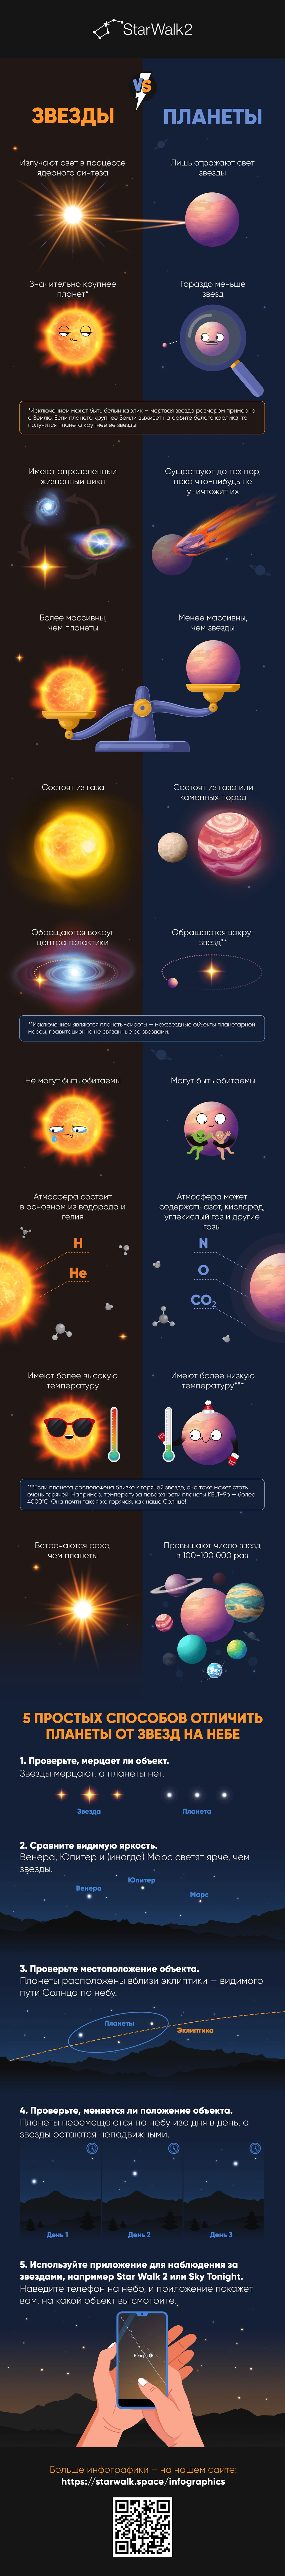 Stars VS Planets